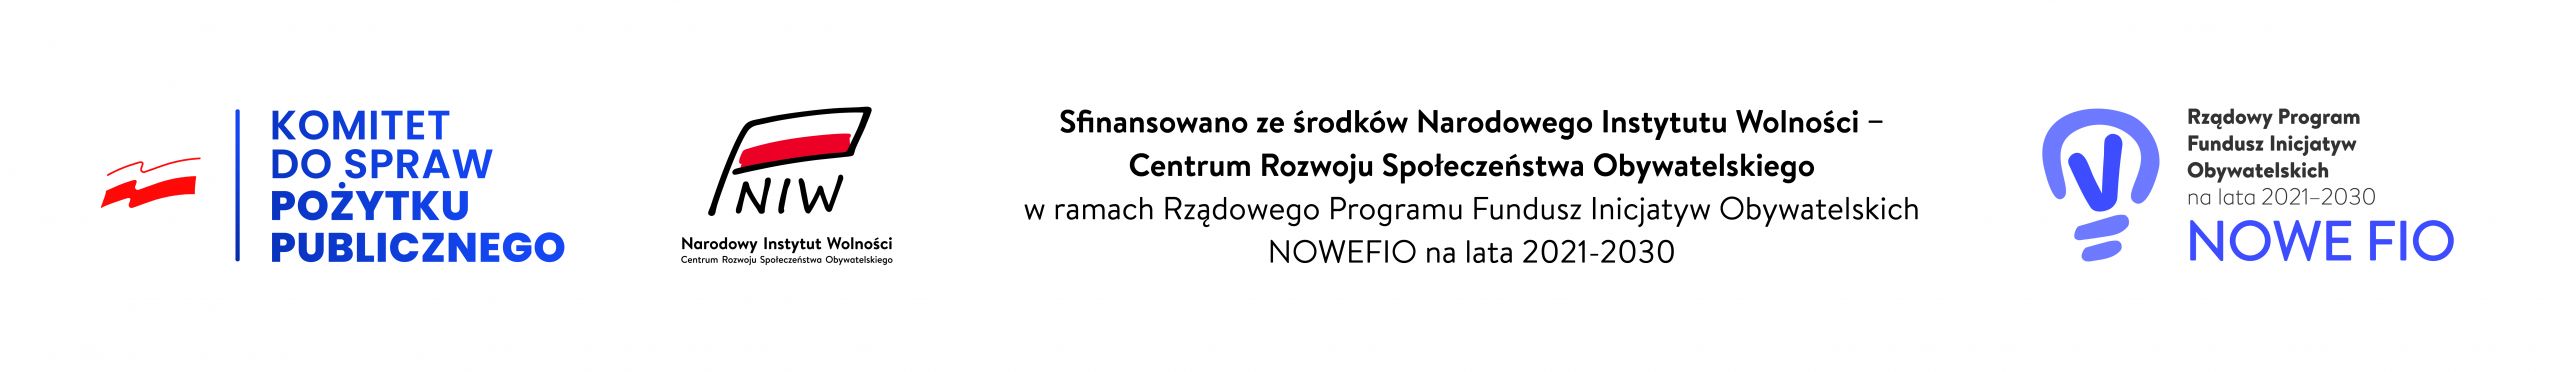 logotypy projektu NOWEFIO